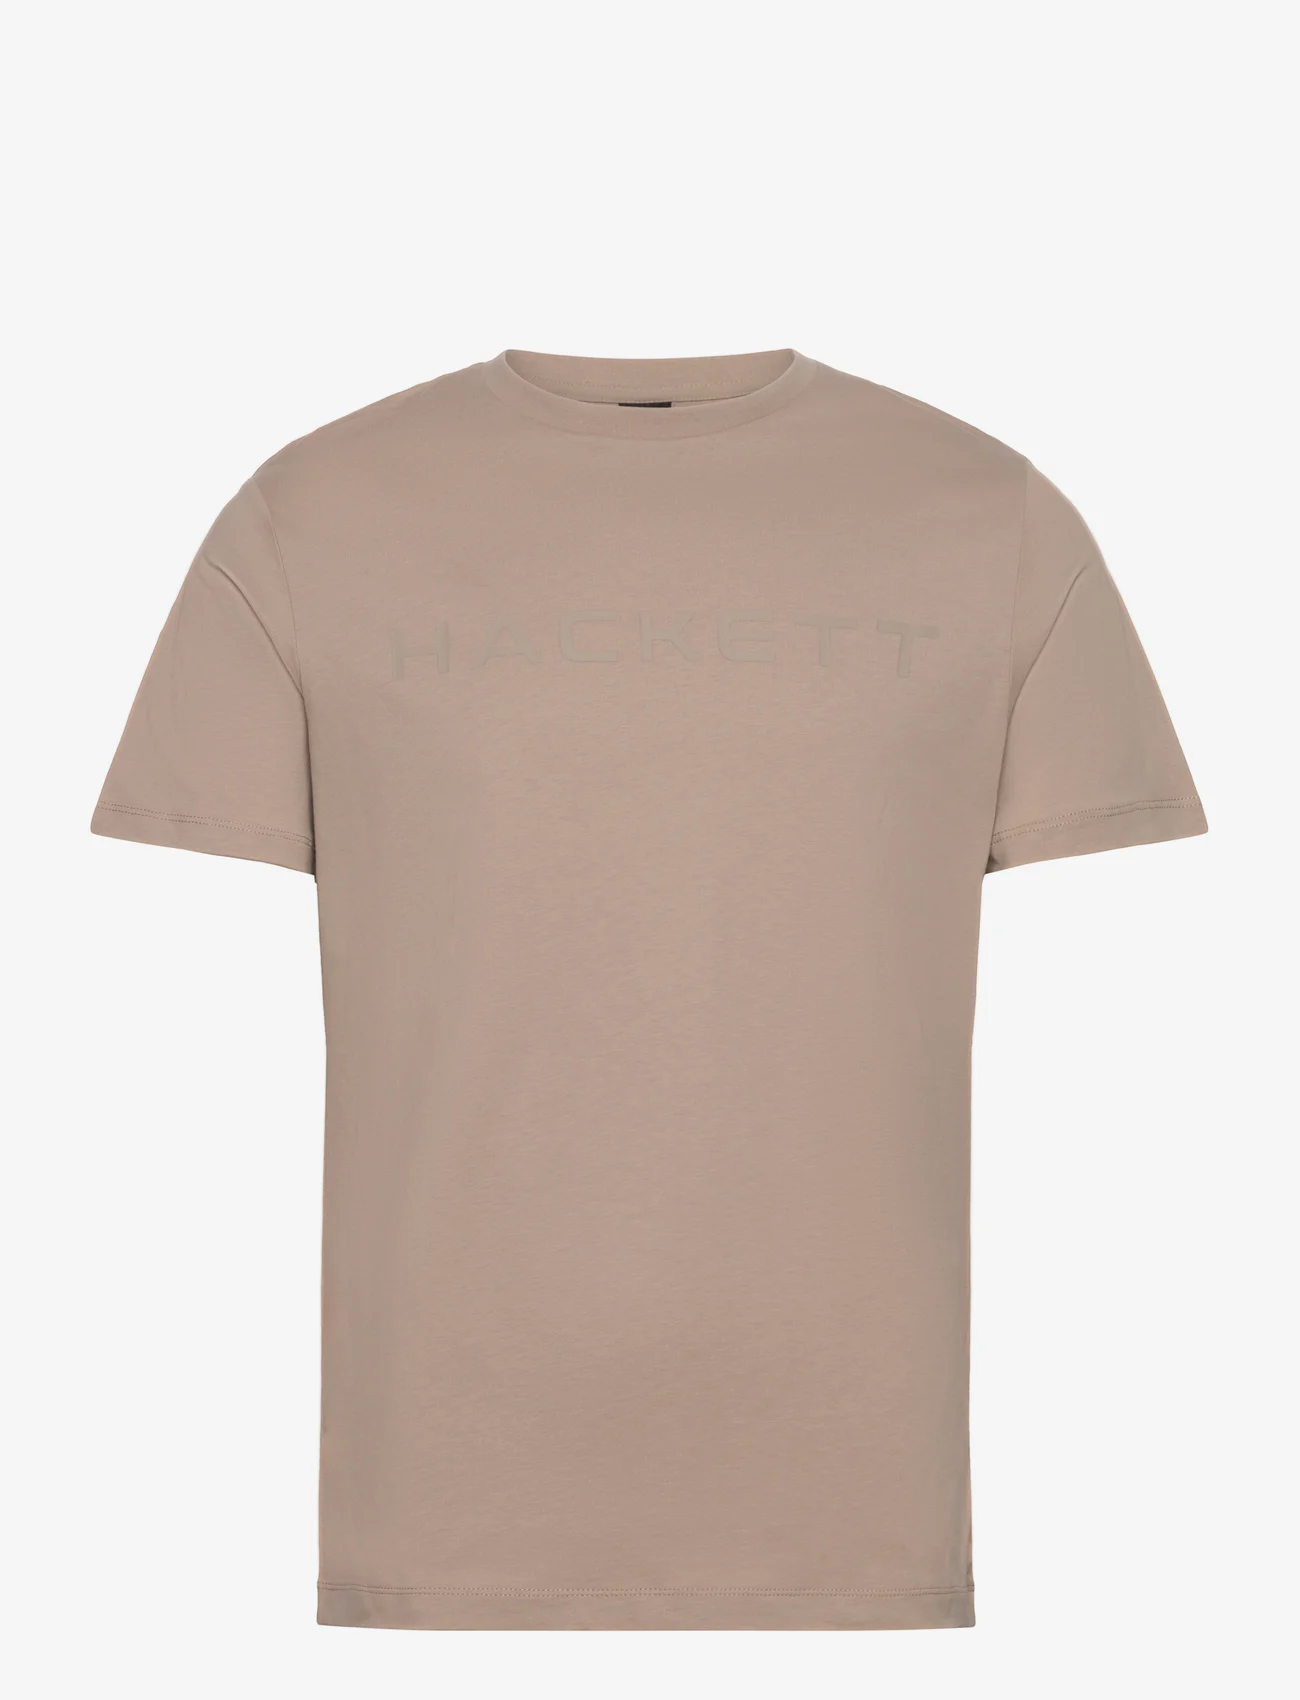 Hackett London - ESSENTIAL TEE - basis-t-skjorter - desert khaki - 0